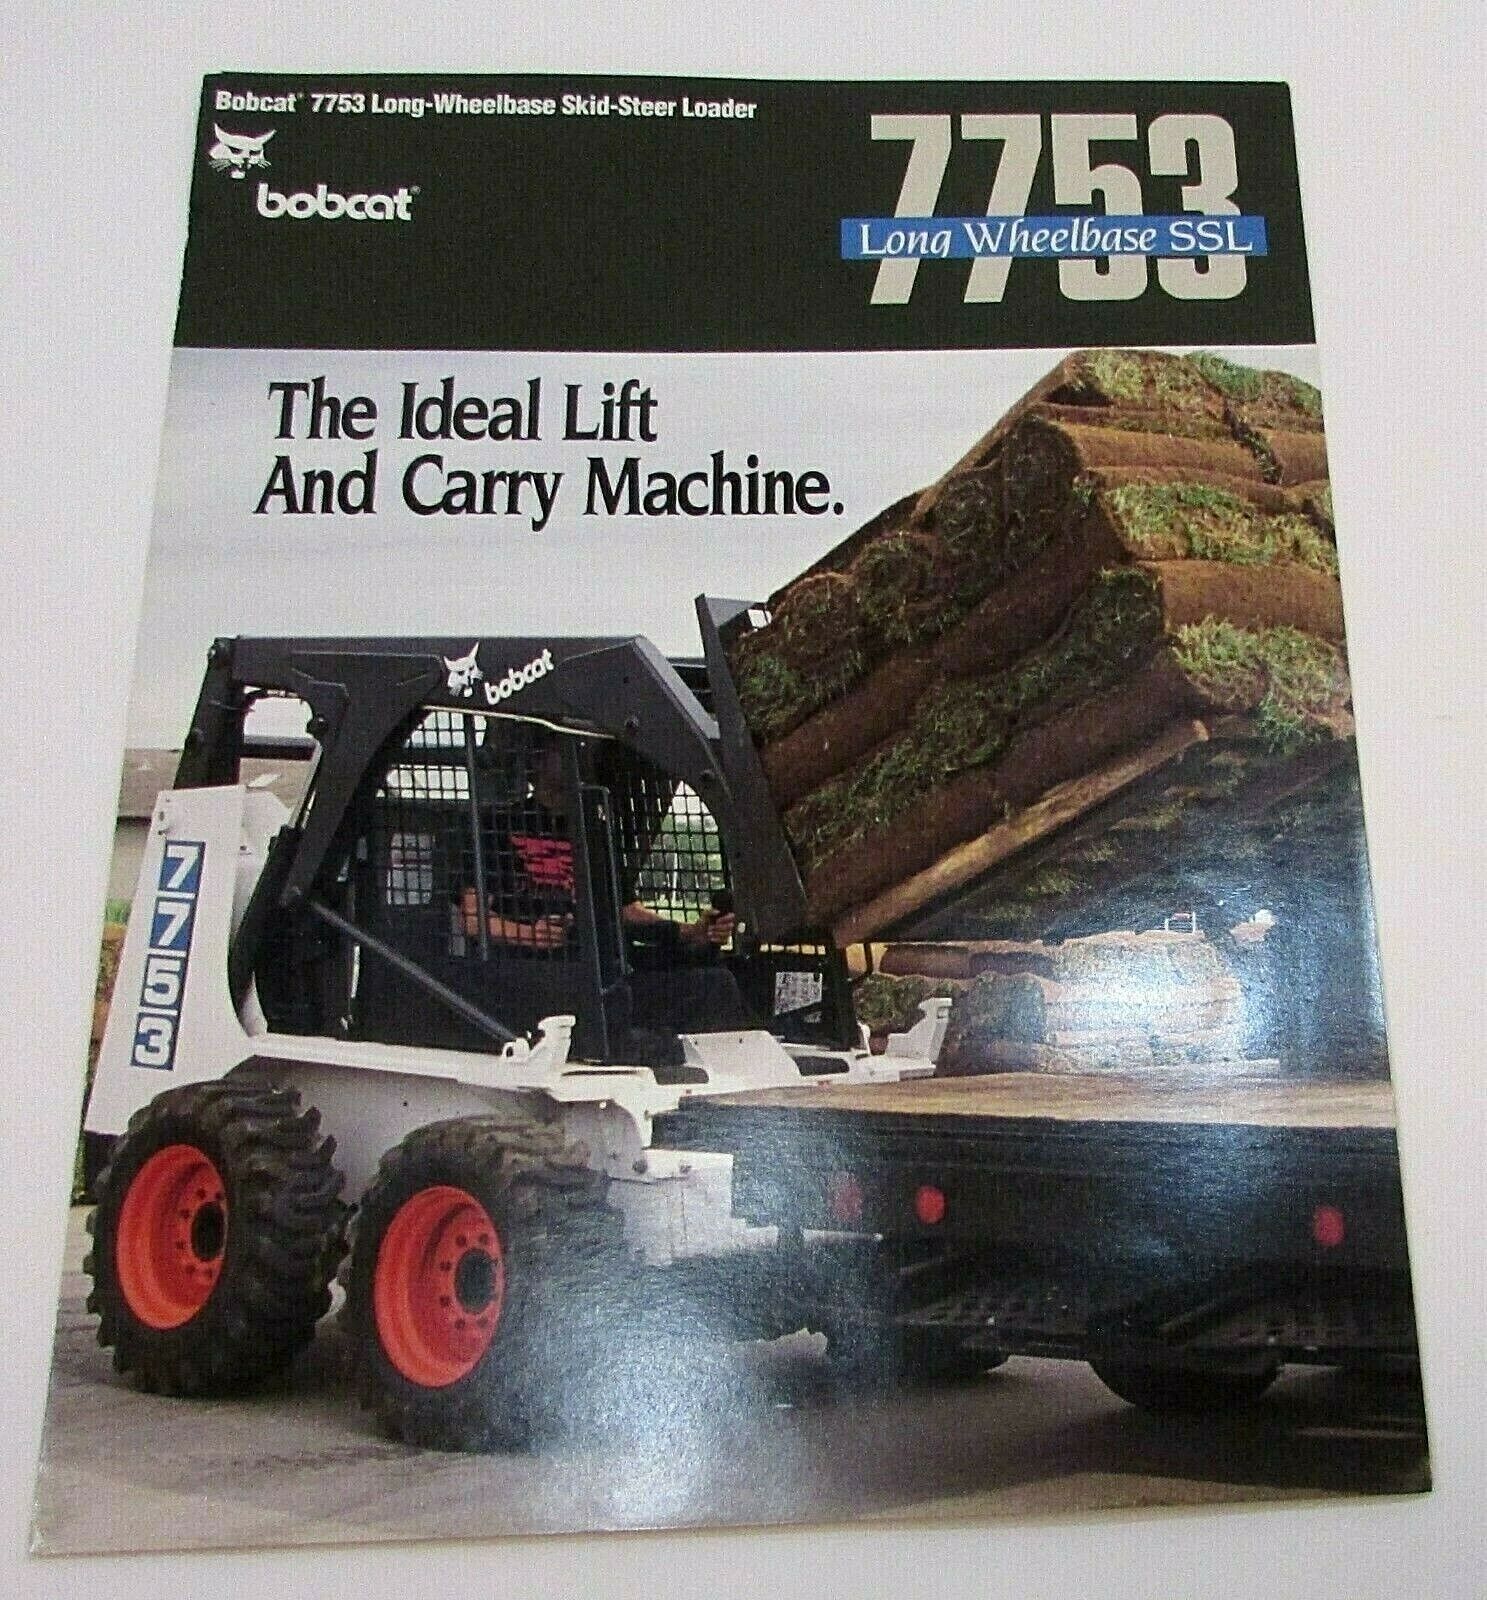 New Vintage 1993 Bobcat 7753 Long Wheelbase Skid Steer Loader Unused Brochure